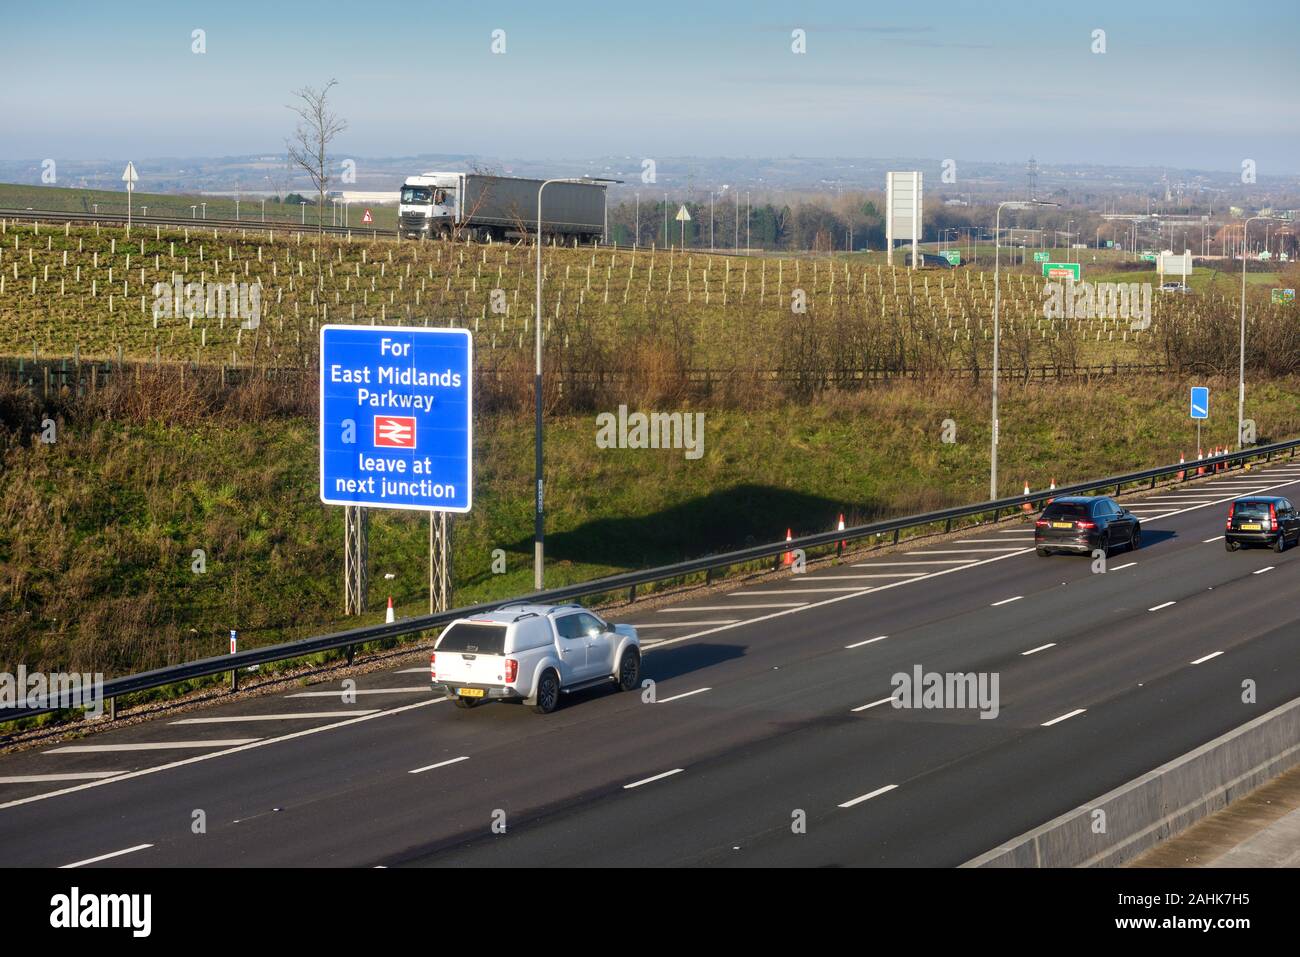 Autopista M1 J24 East Midlands, una de las autopistas más transitadas en el Reino Unido. Foto de stock